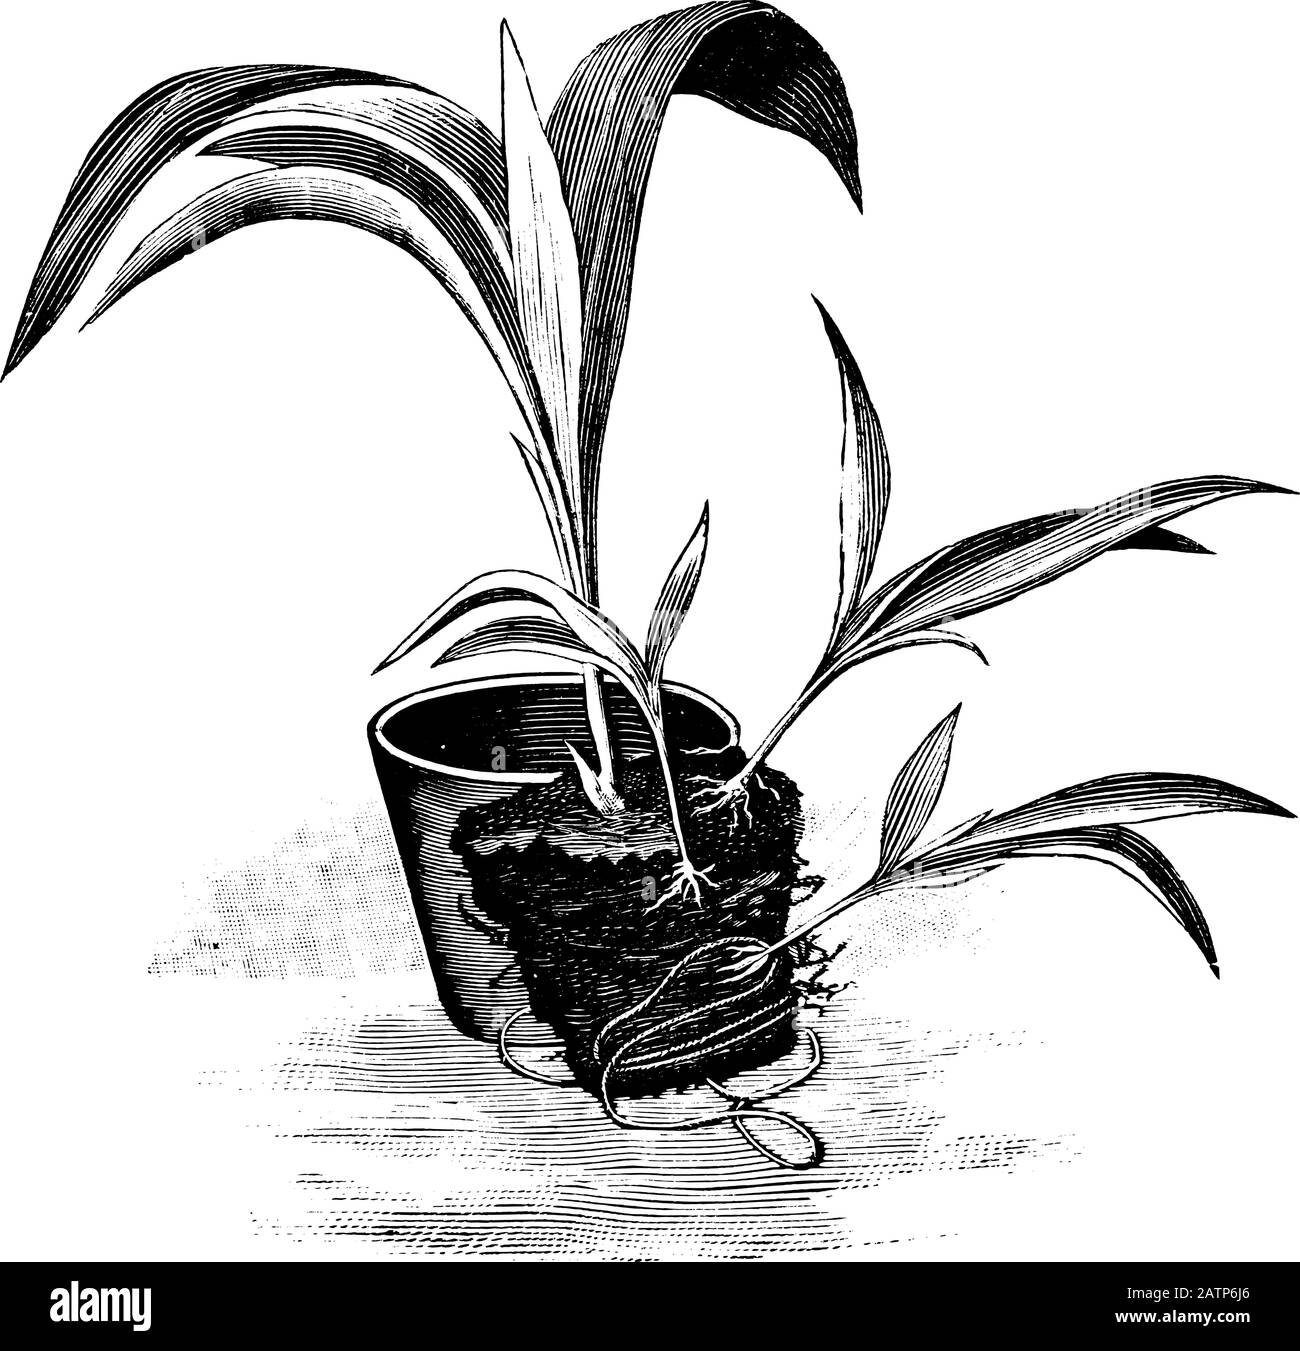 Antica linea d'arte vintage illustrazione, incisione o disegno di piante o fiori Curculigo propagazione da radice ventose. Da prenotare Piante in camera, Praga, 1898. Illustrazione Vettoriale